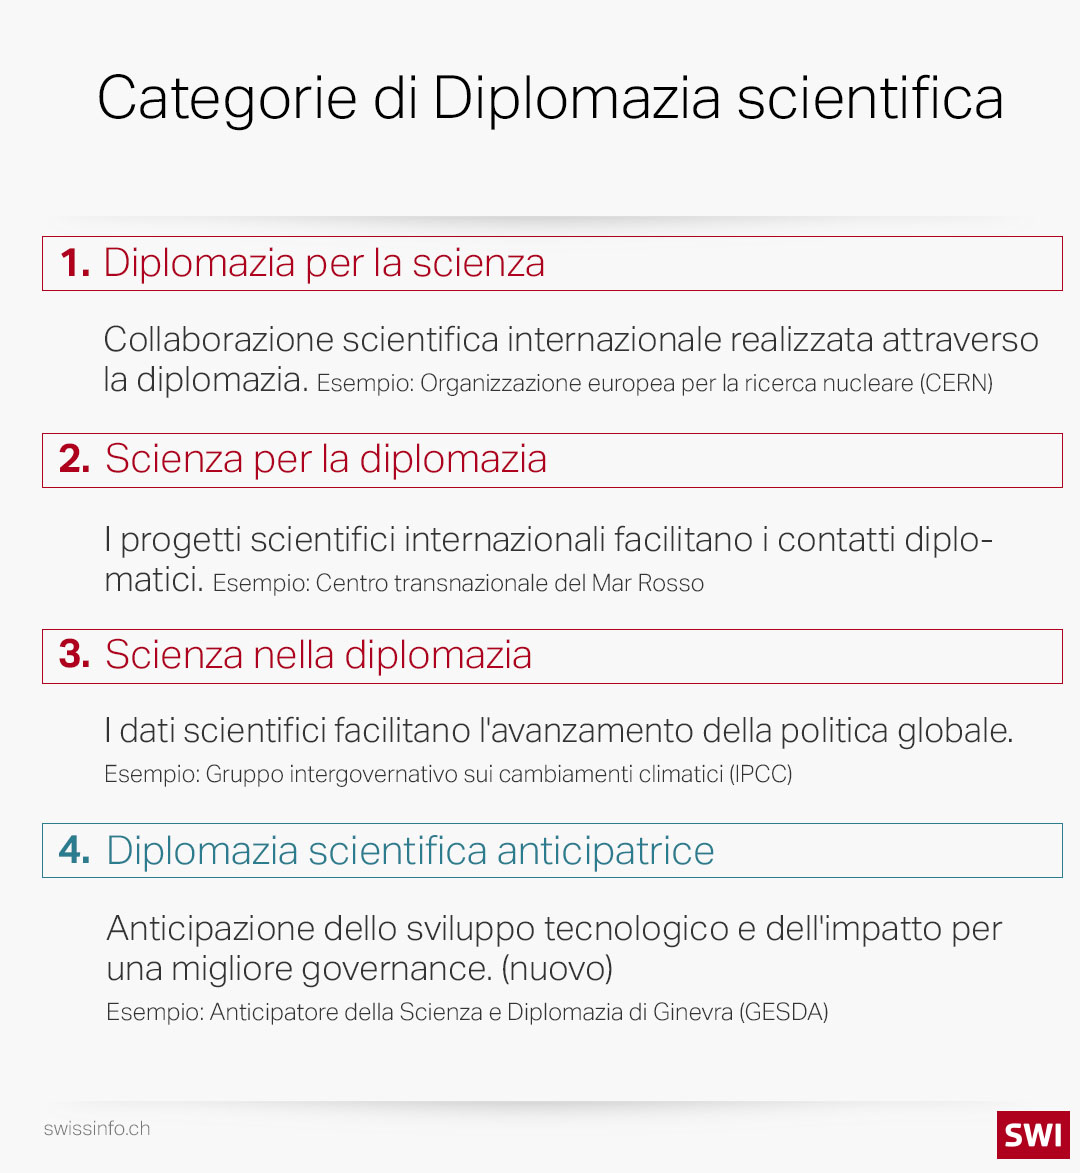 grafica di spiegazione cateforie di diplomazia scientifica